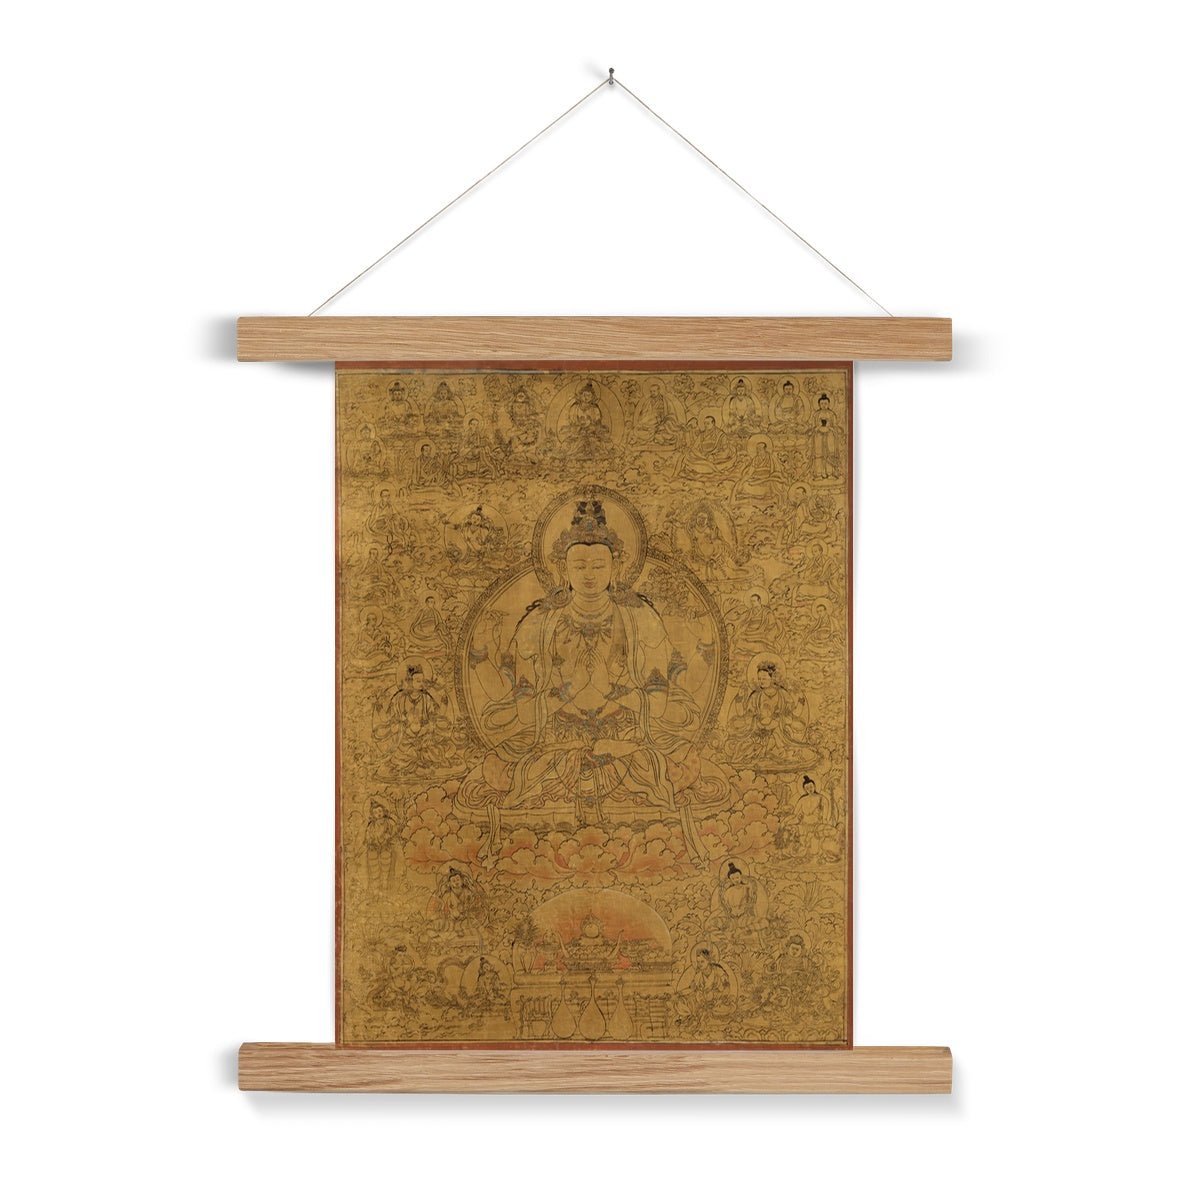 Fine art 6"x8" / Natural Frame Avalokiteshvara, Tibetan Buddhist Compassion Deity | Guan Yin, Kuan Yin Om, Dalai Lama, Yoga Meditation Fine Art Print with Hanger